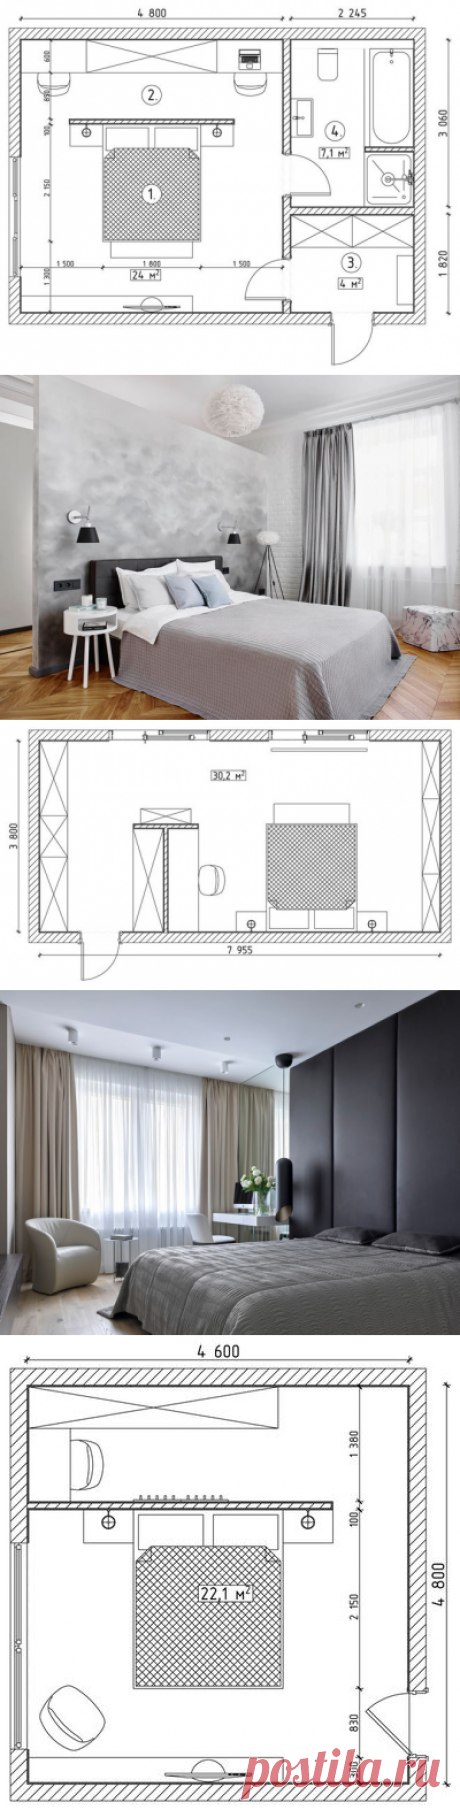 Дизайн спальни 20 кв м: Варианты дизайн-проекта планировки спальни 20 кв м с гардеробной и санузлом, фото и идеи